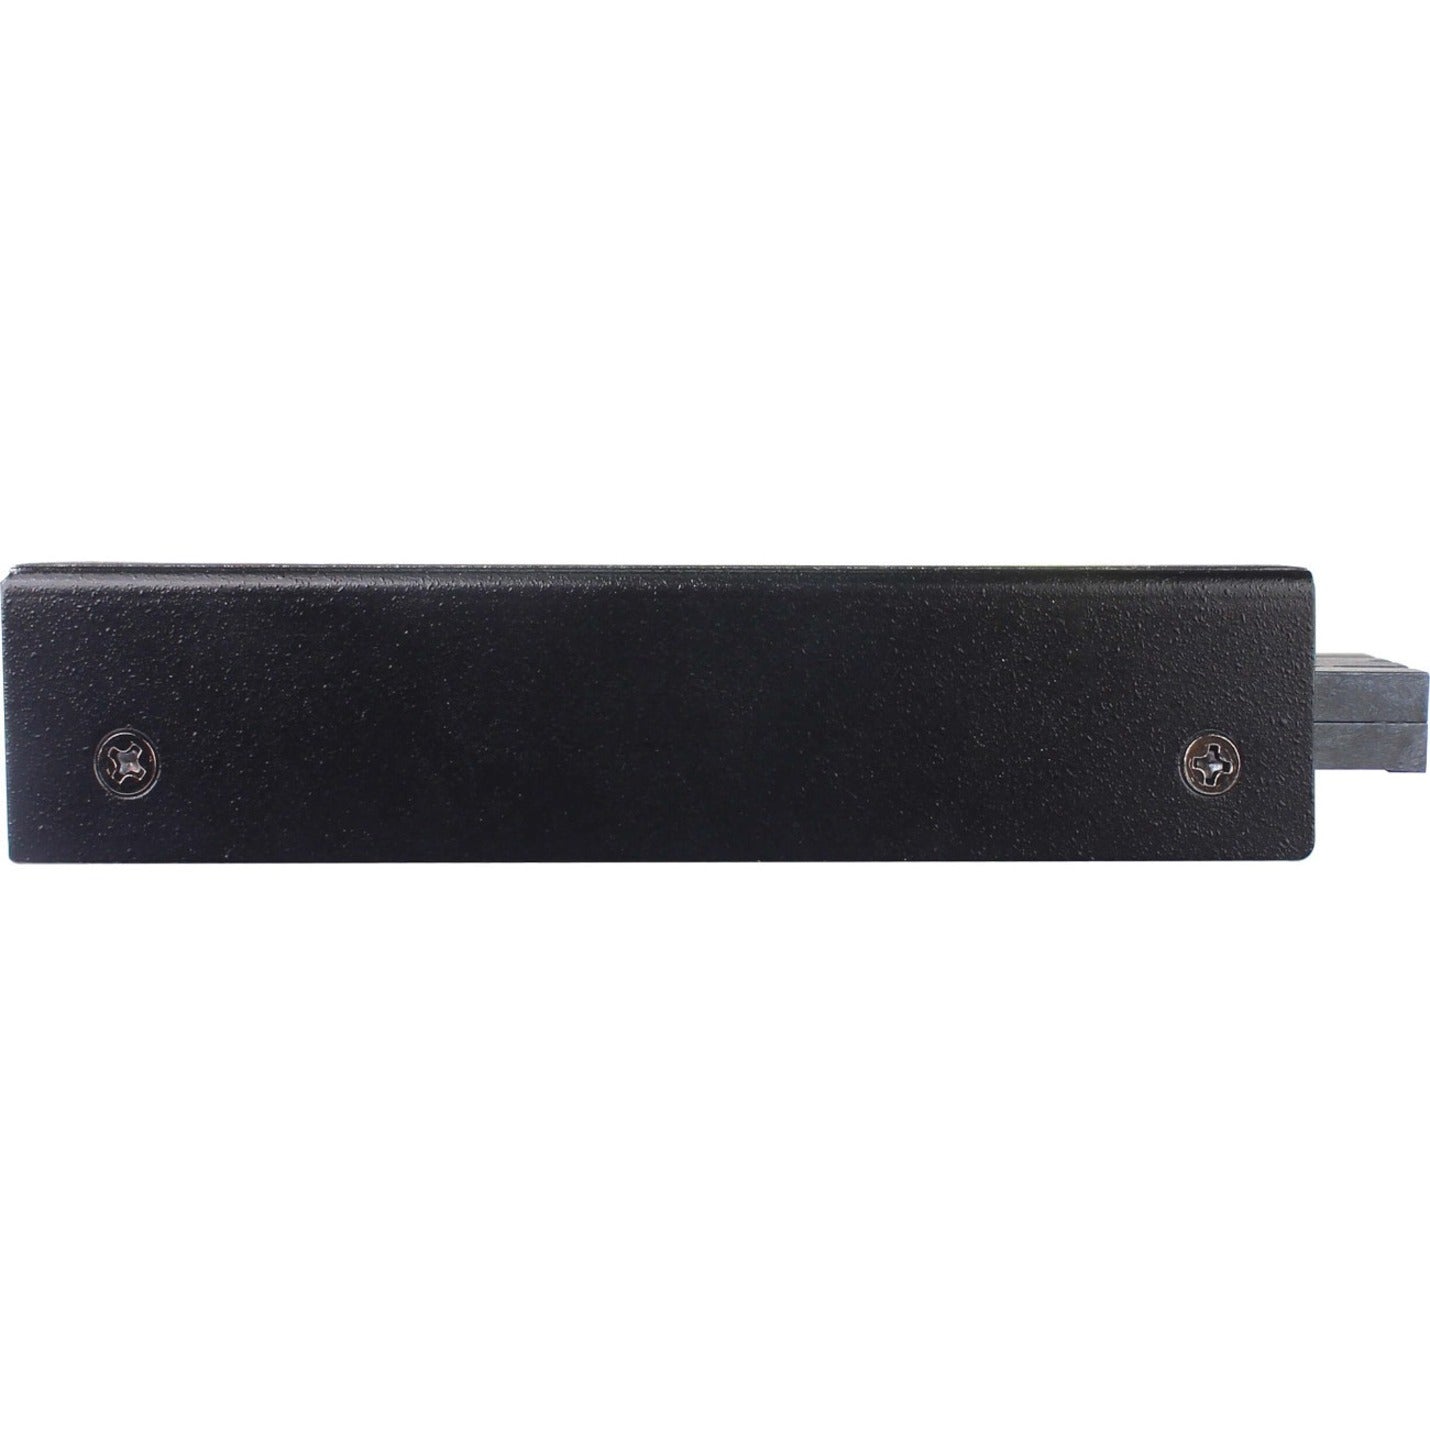 Tripp Lite N785-H01-SCMM トランシーバー/メディアコンバーター ギガビット銅からファイバー マルチモード 1640.42 ftサポート距離